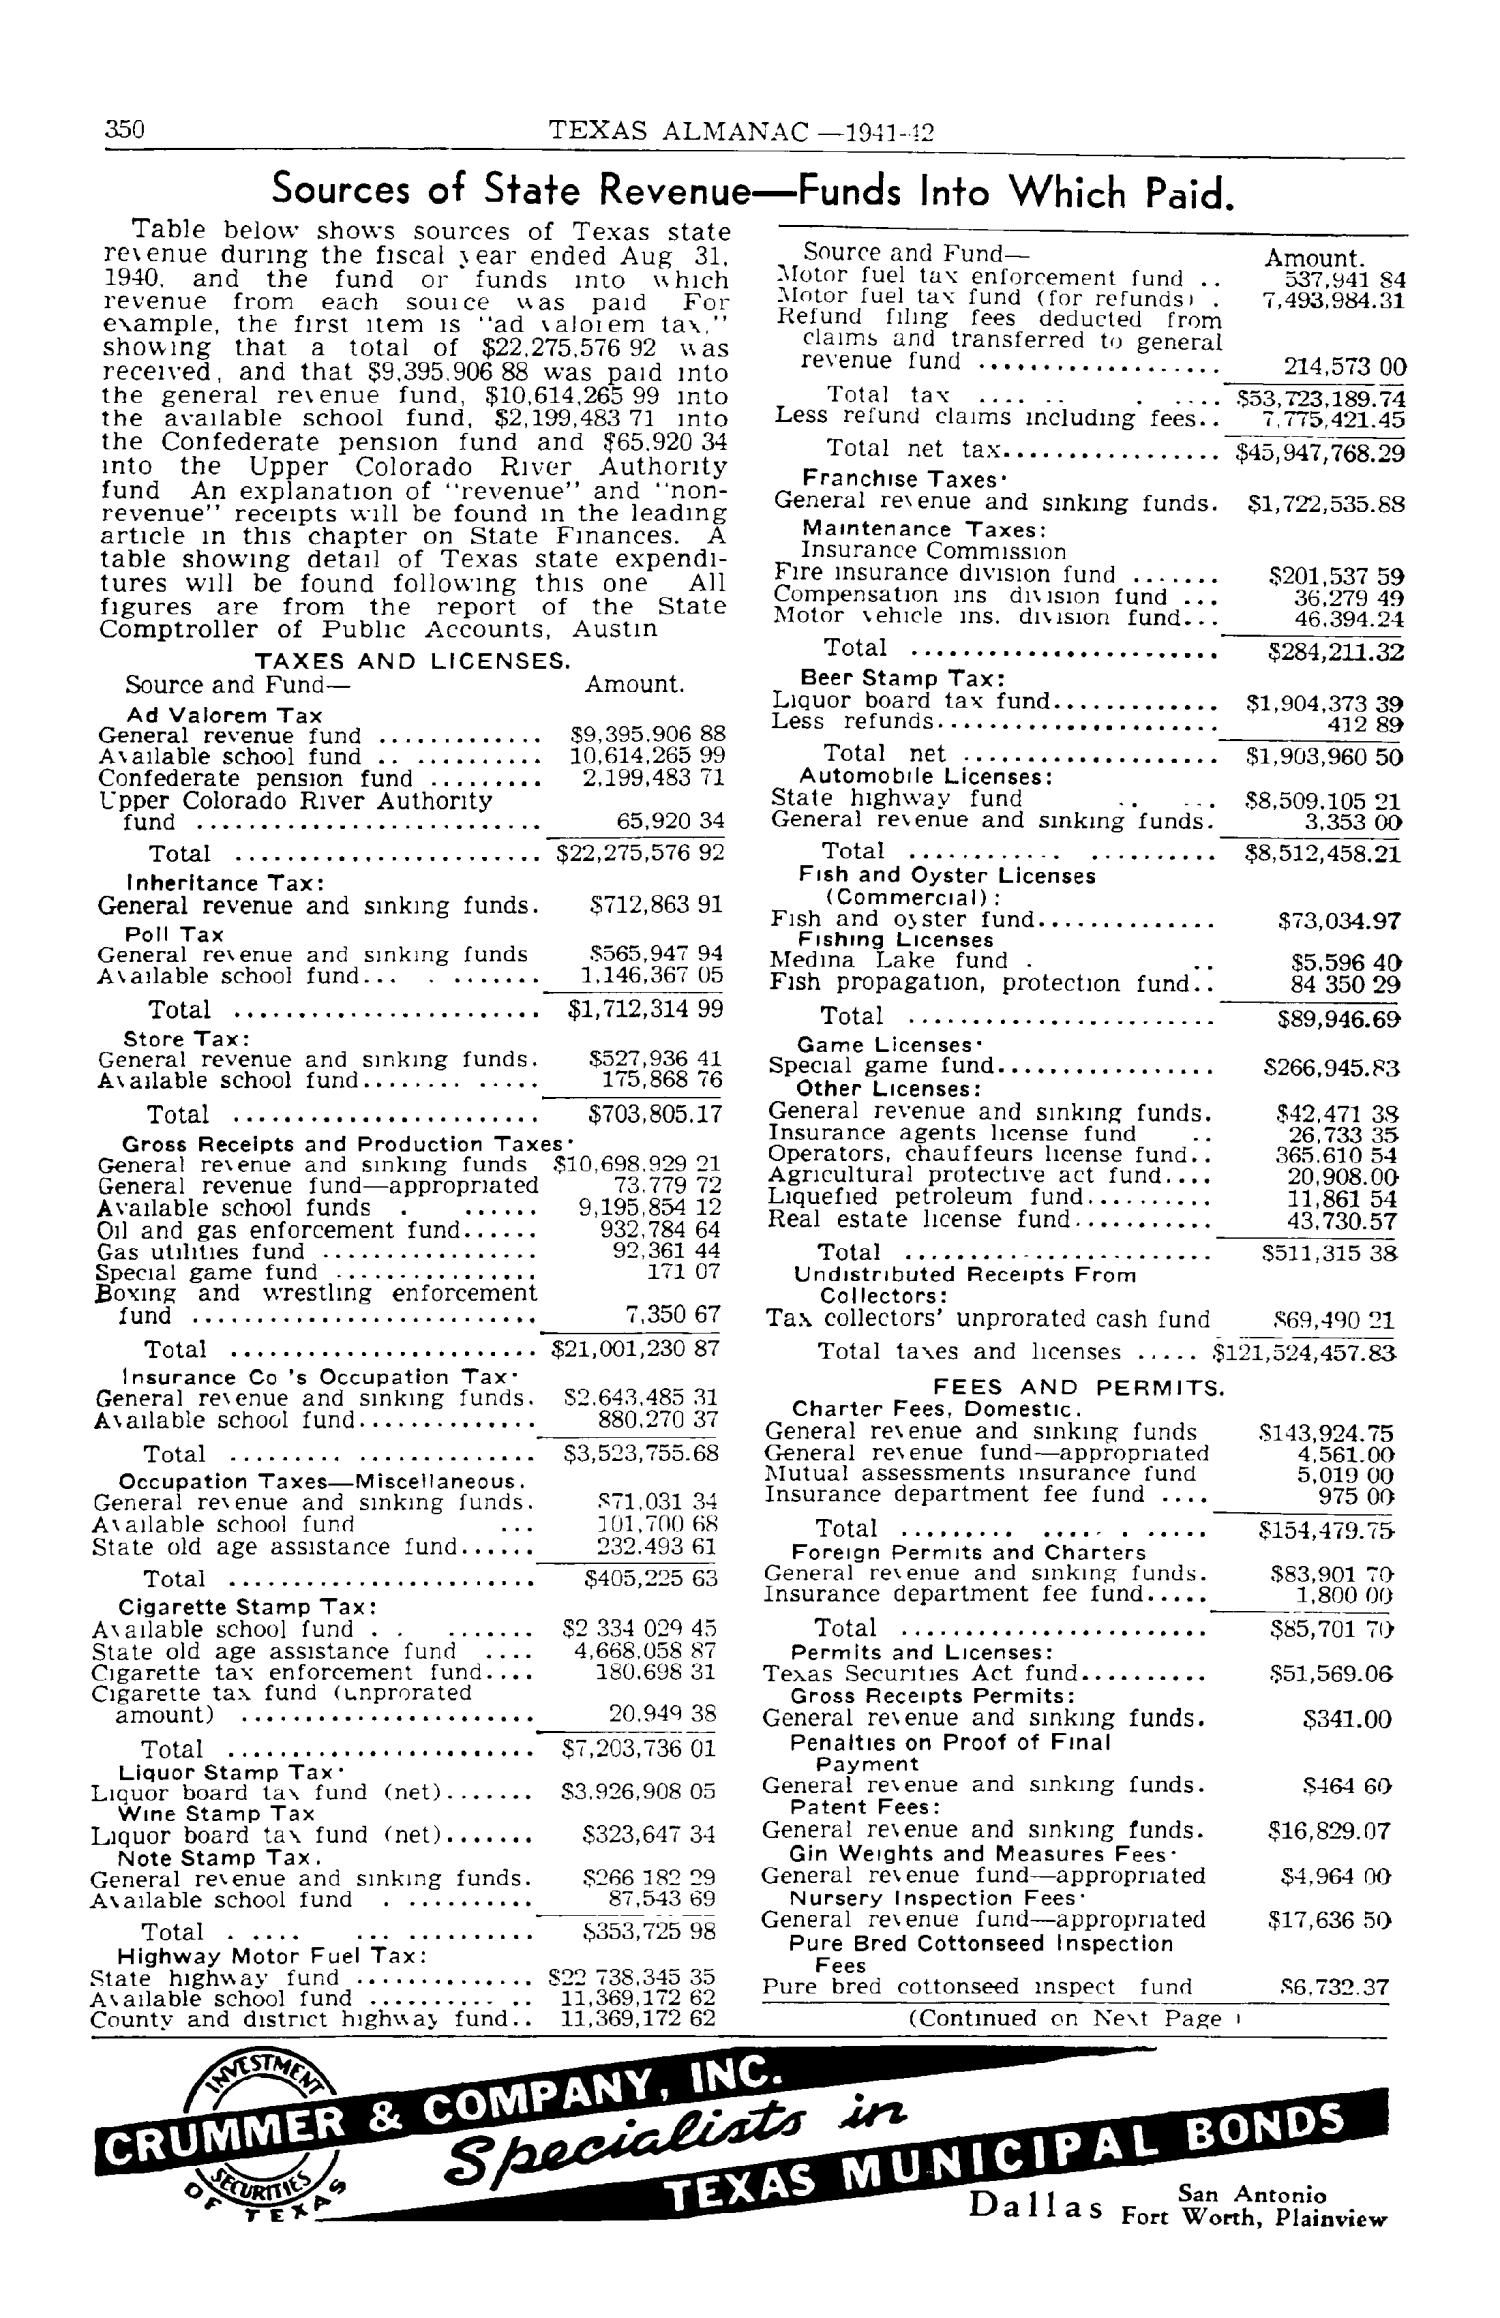 Texas Almanac, 1941-1942
                                                
                                                    350
                                                